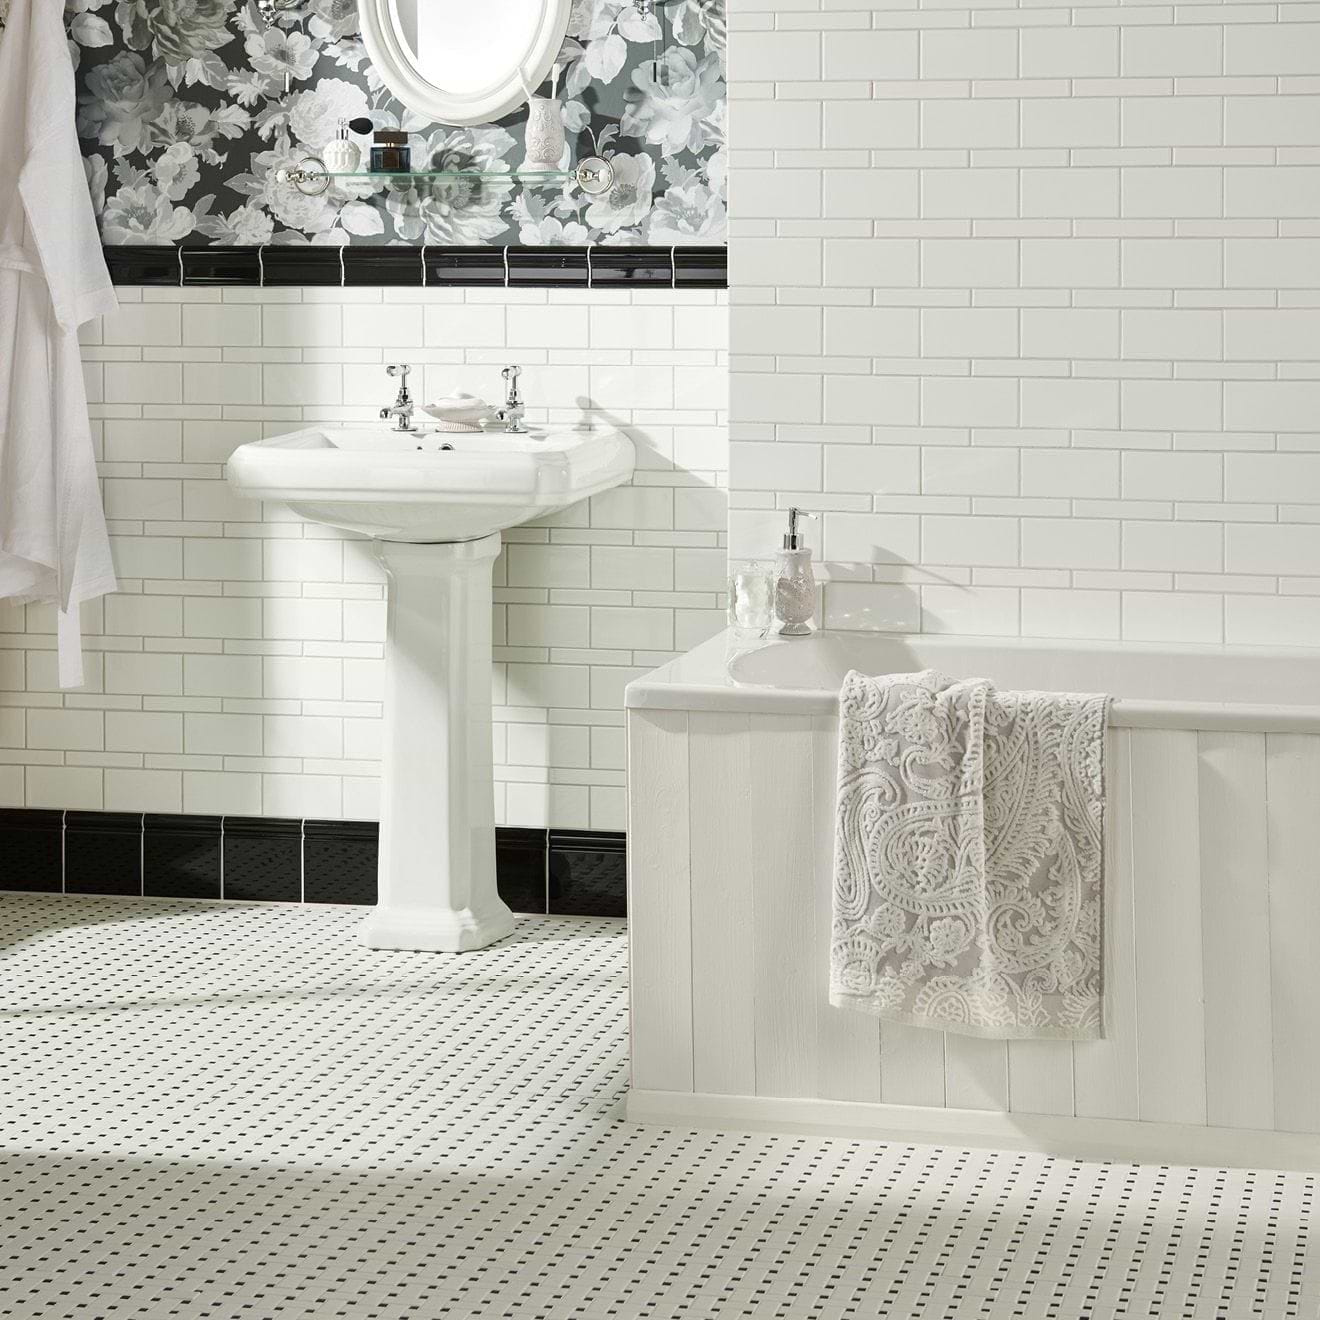 Ceramic Tile Skirting Beige Color Fixed Stock Photo 1516404263 |  Shutterstock